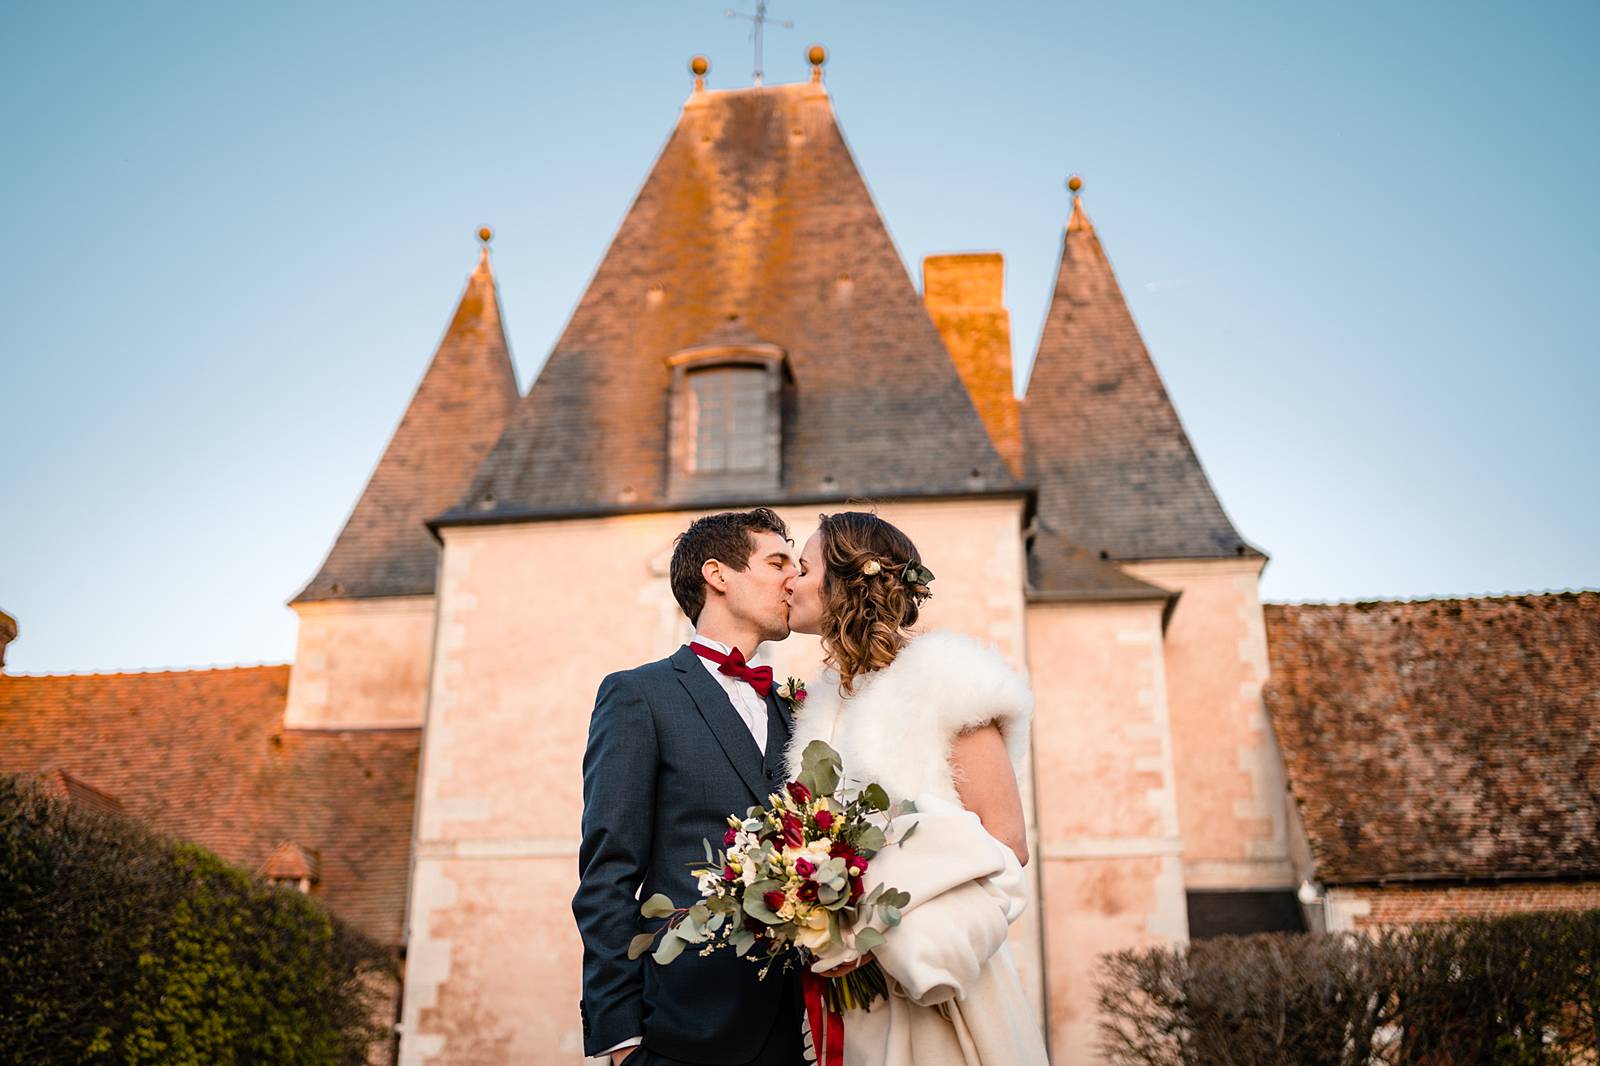 L'aperçu du mariage laïque international de Anneke et Jonathan au Château de Bonnemare en Normandie. Alexandre Roschewitz, photographe mariage.